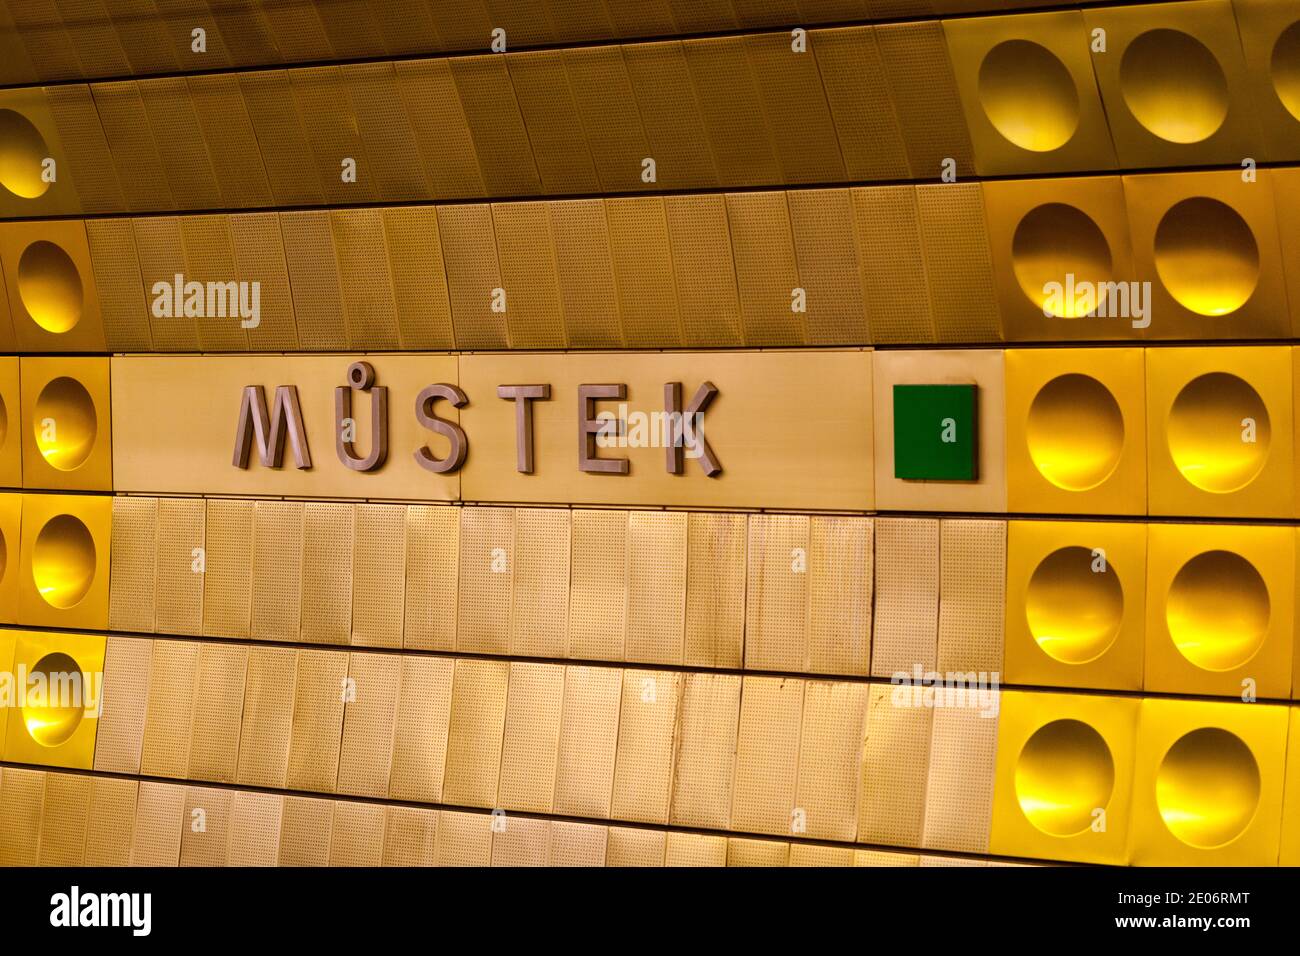 Station de métro de Prague Mustek design Banque D'Images